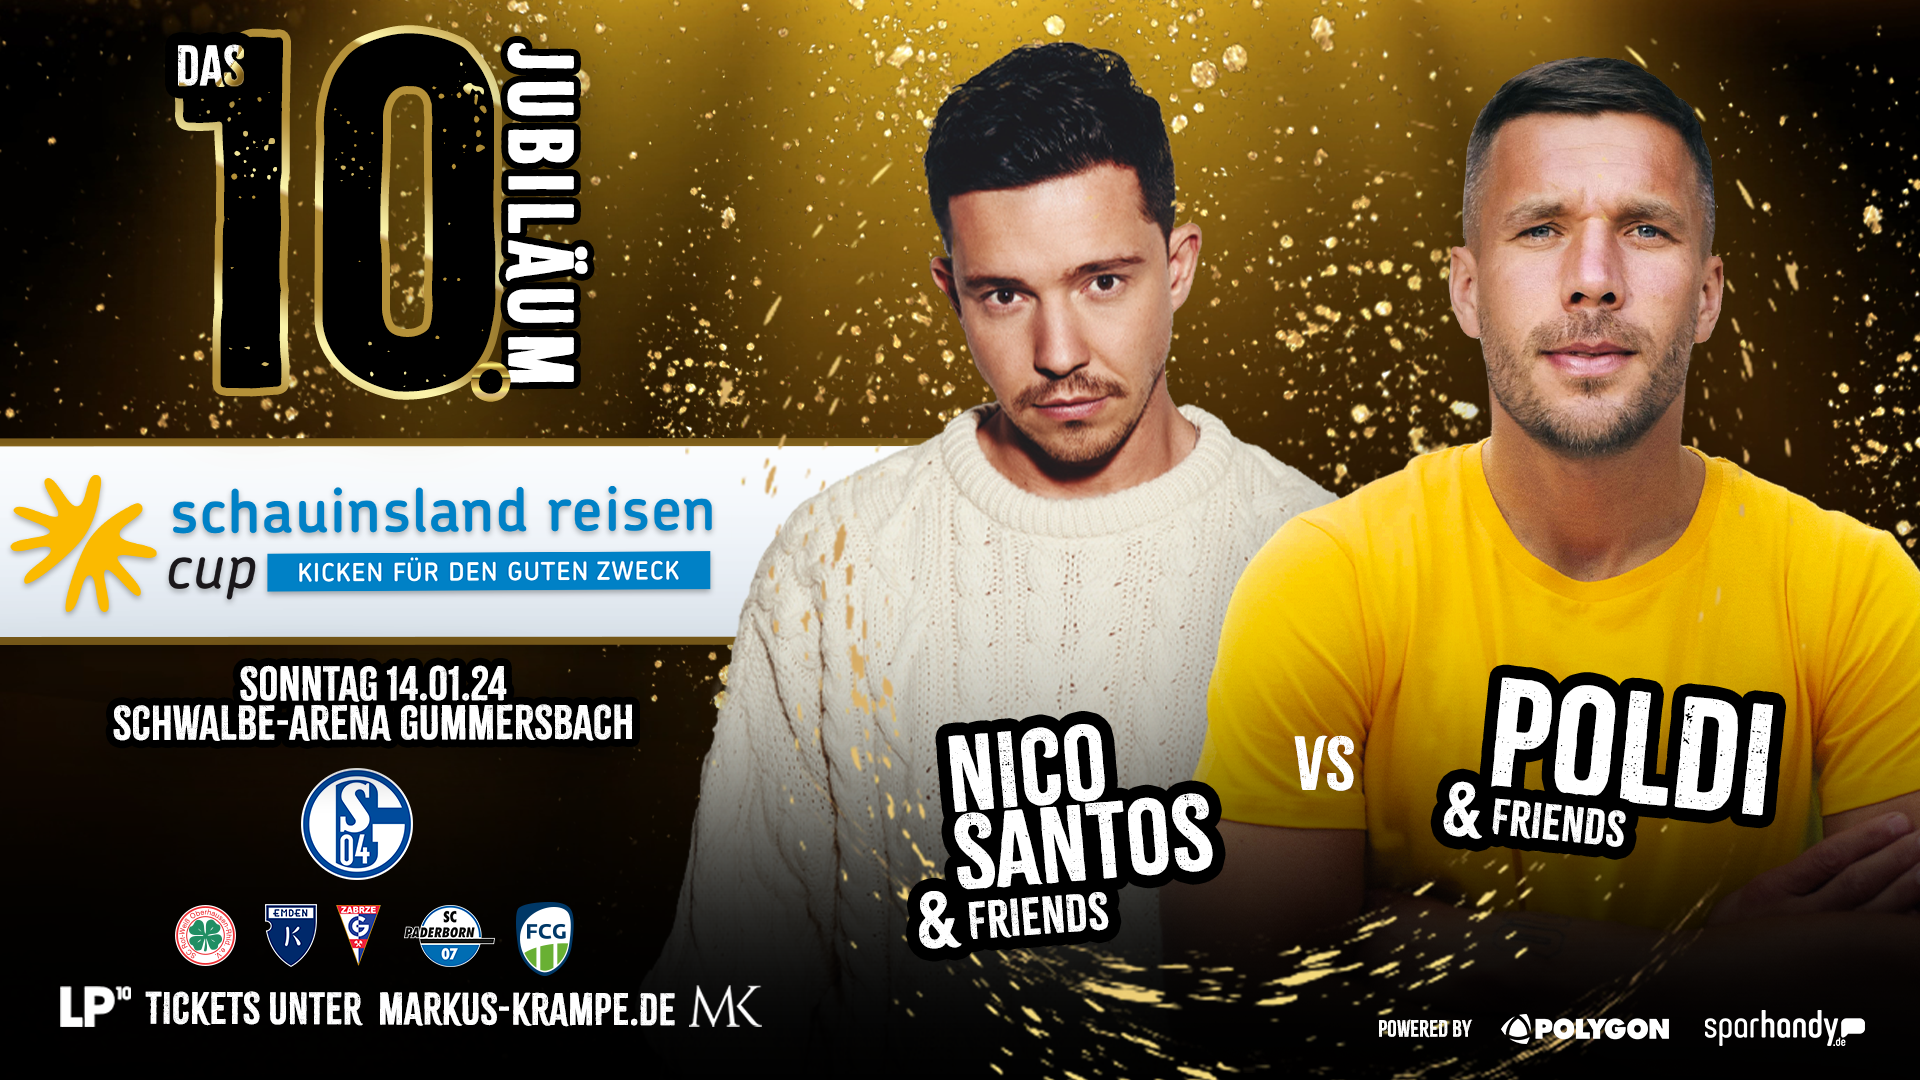 SCHWALBE arena | schauinsland reisen Cup – Nico Santos & Friends vs. Poldi & Friends